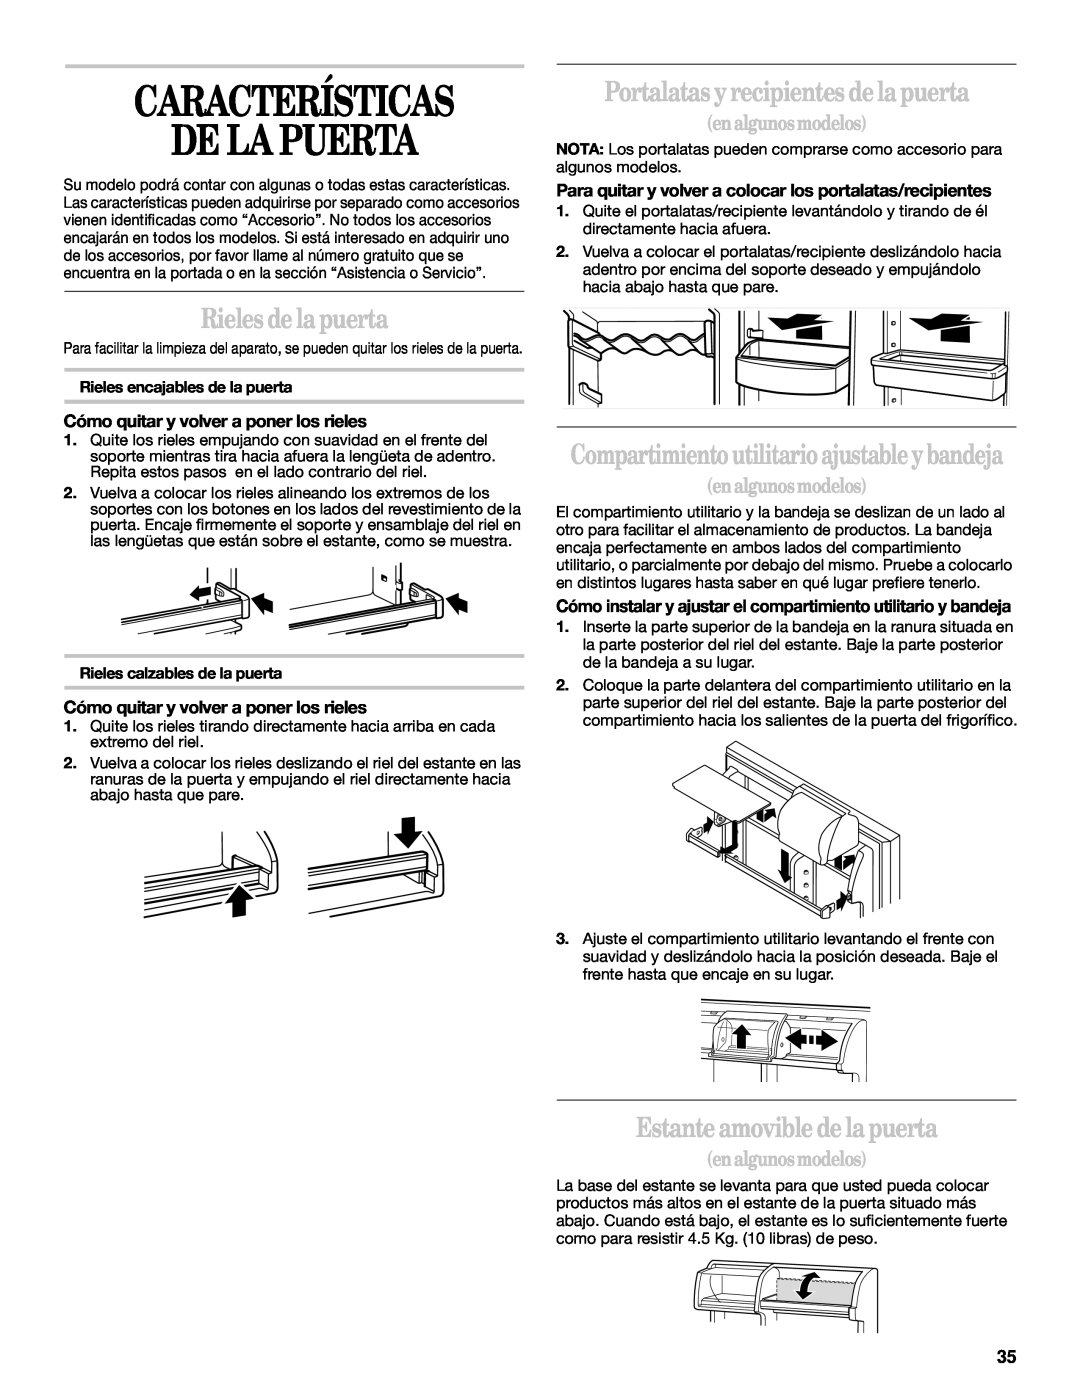 Whirlpool 2218585 manual Características De La Puerta, Rieles de la puerta, Portalatas y recipientes de la puerta 